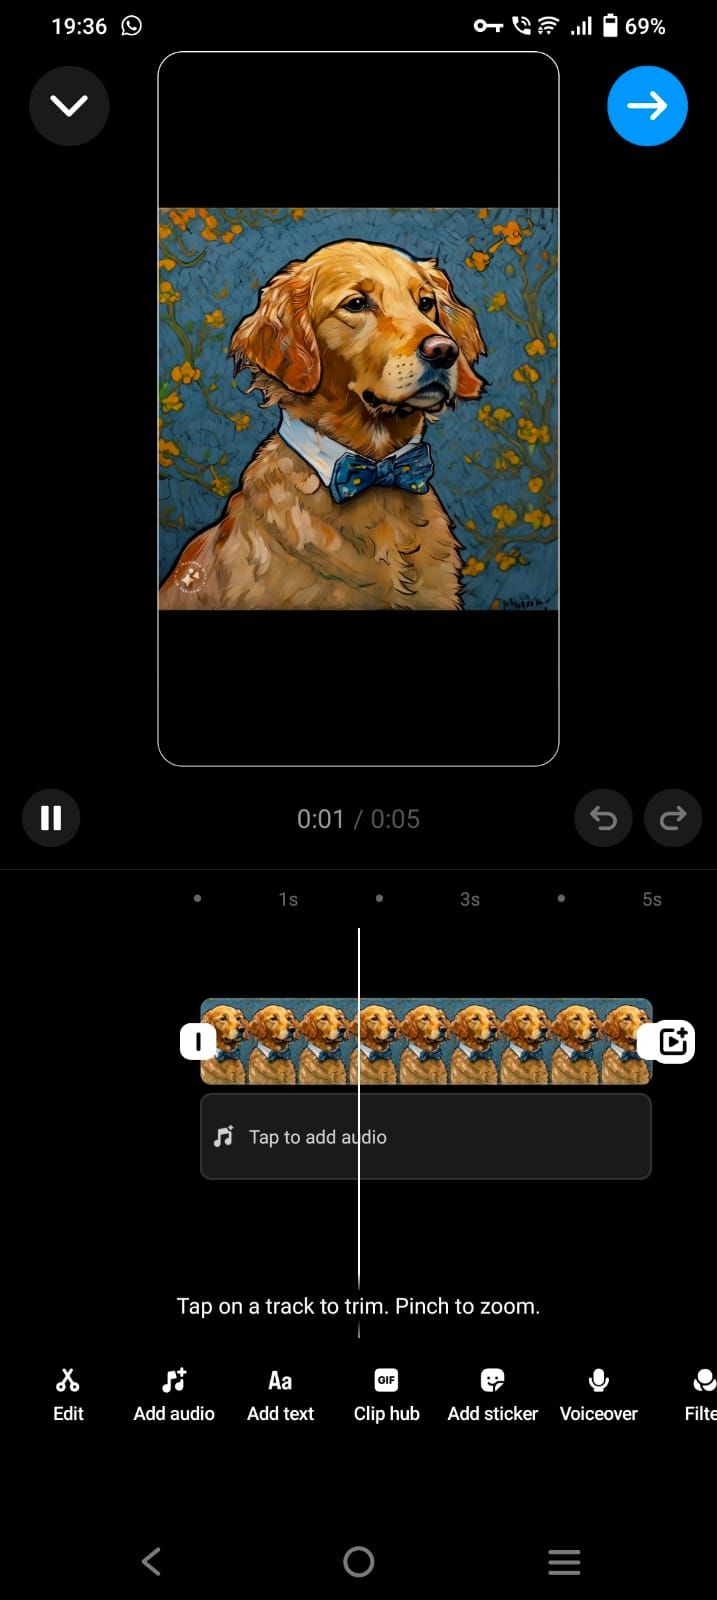 Captura de tela mostrando as opções de edição do Instagram Reels